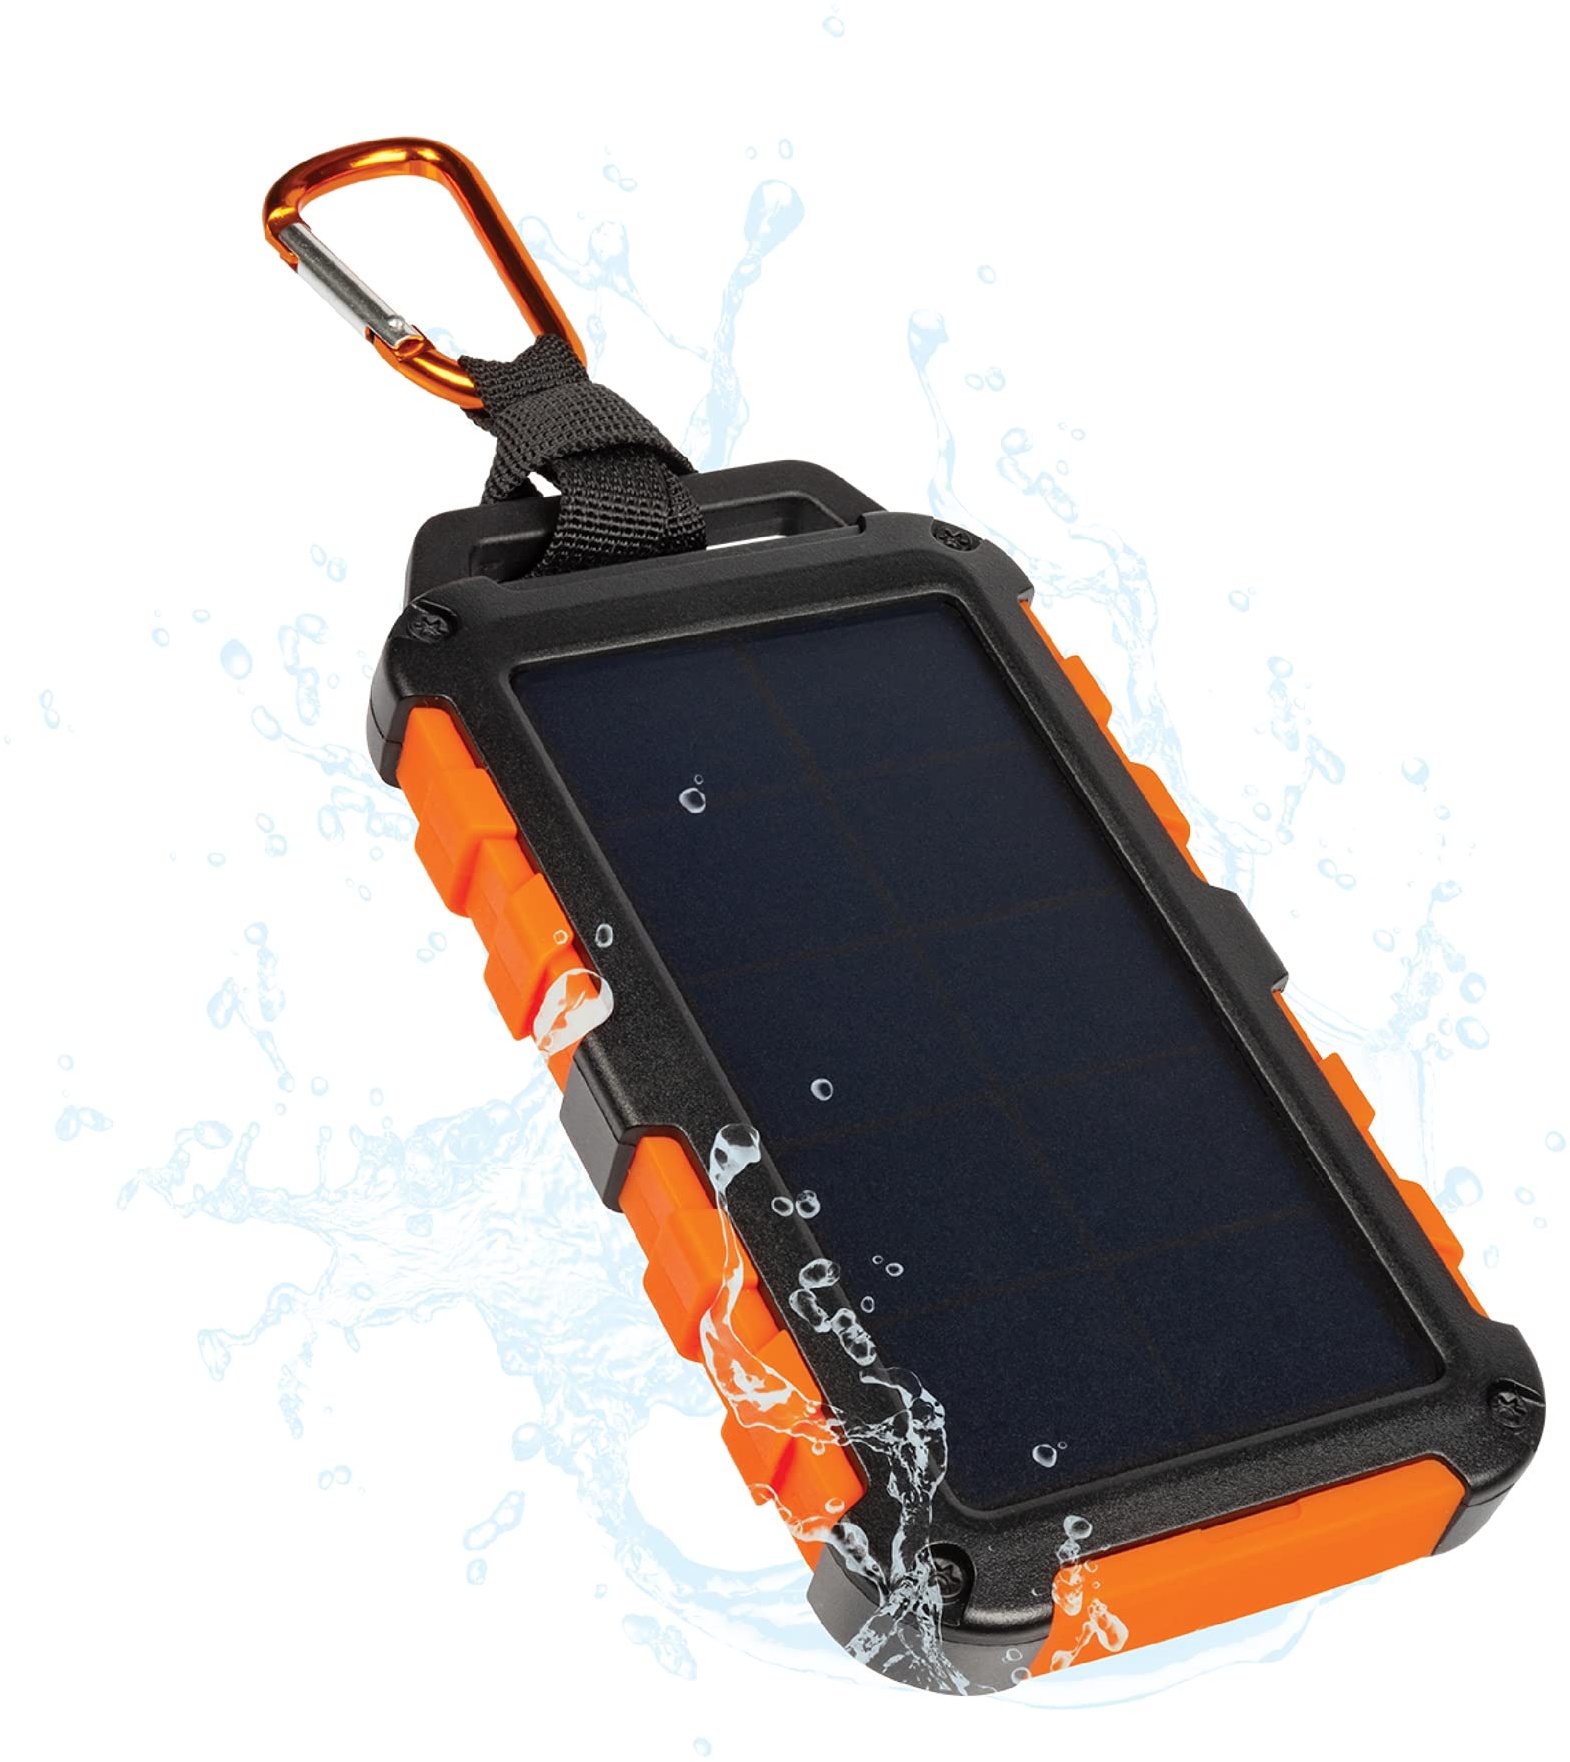 Xtorm by A-Solar Solar Ladegerät 10.000 mAh Powerbank für den Außenbereich mit Power-Akku, 20-W-USB-C Ausgang und LED-Taschenlampe, Schwarz/Orange, XR104, Multicolor